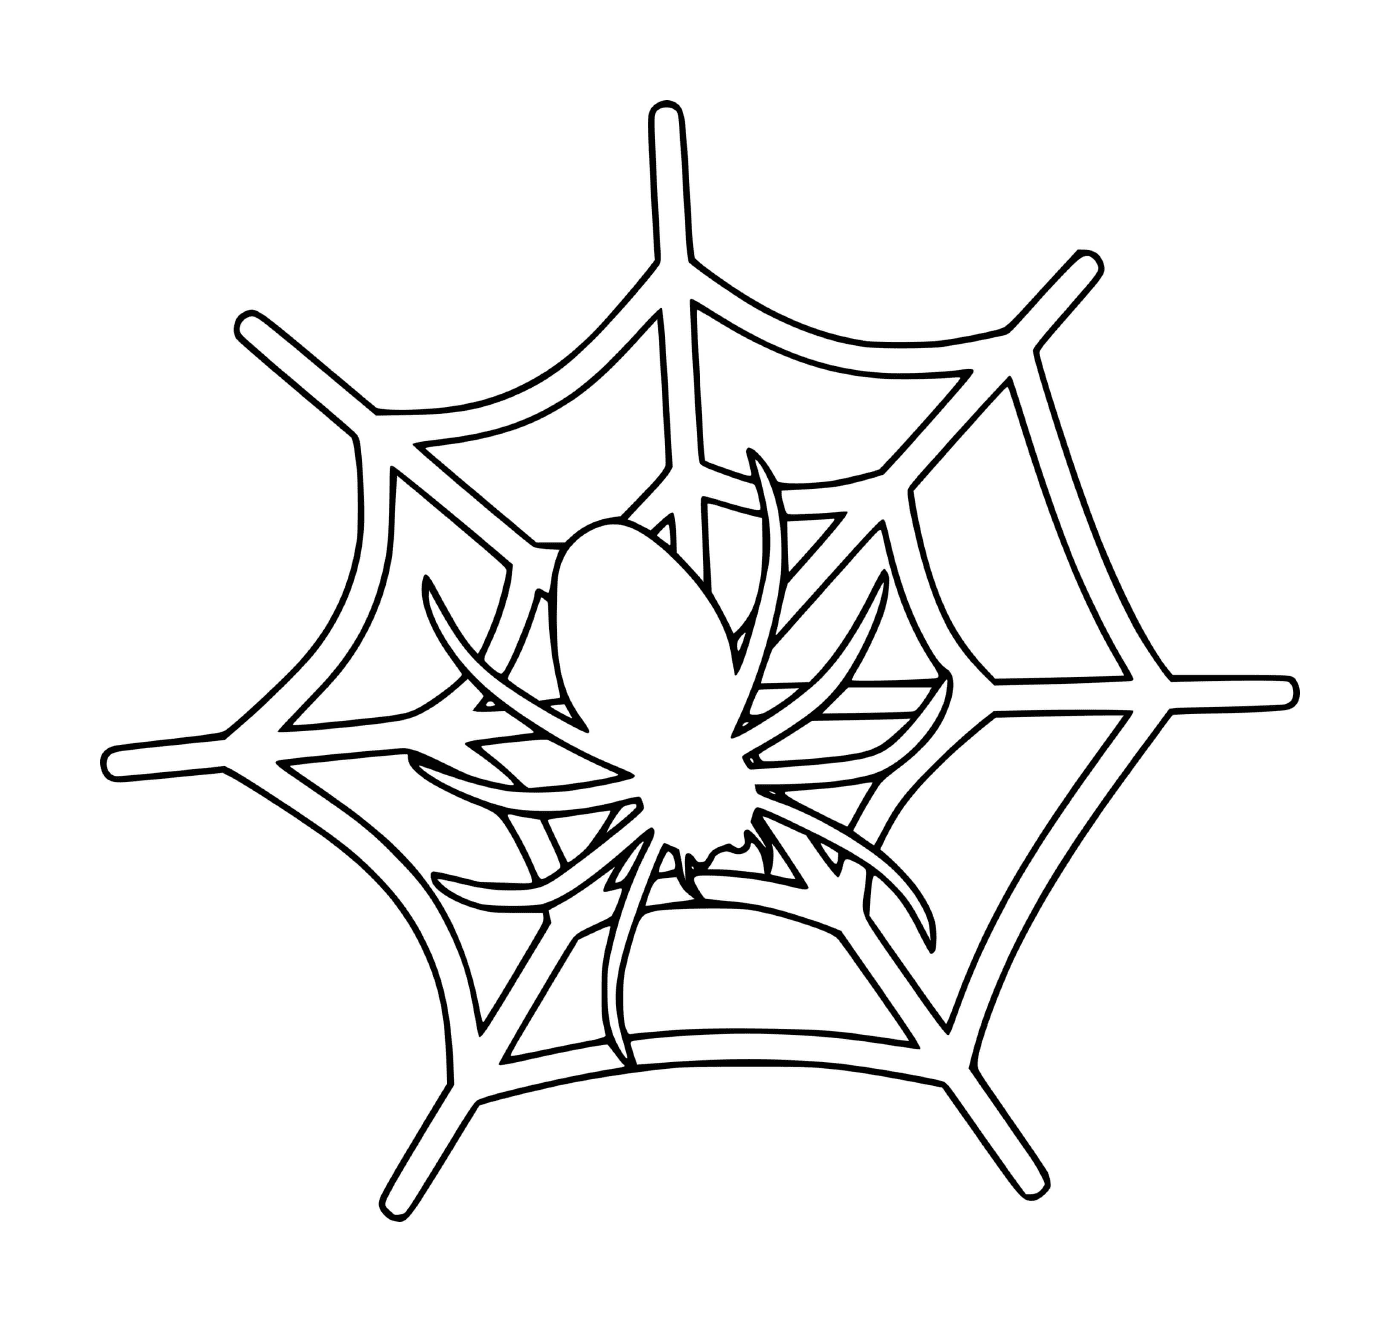  网上蜘蛛 